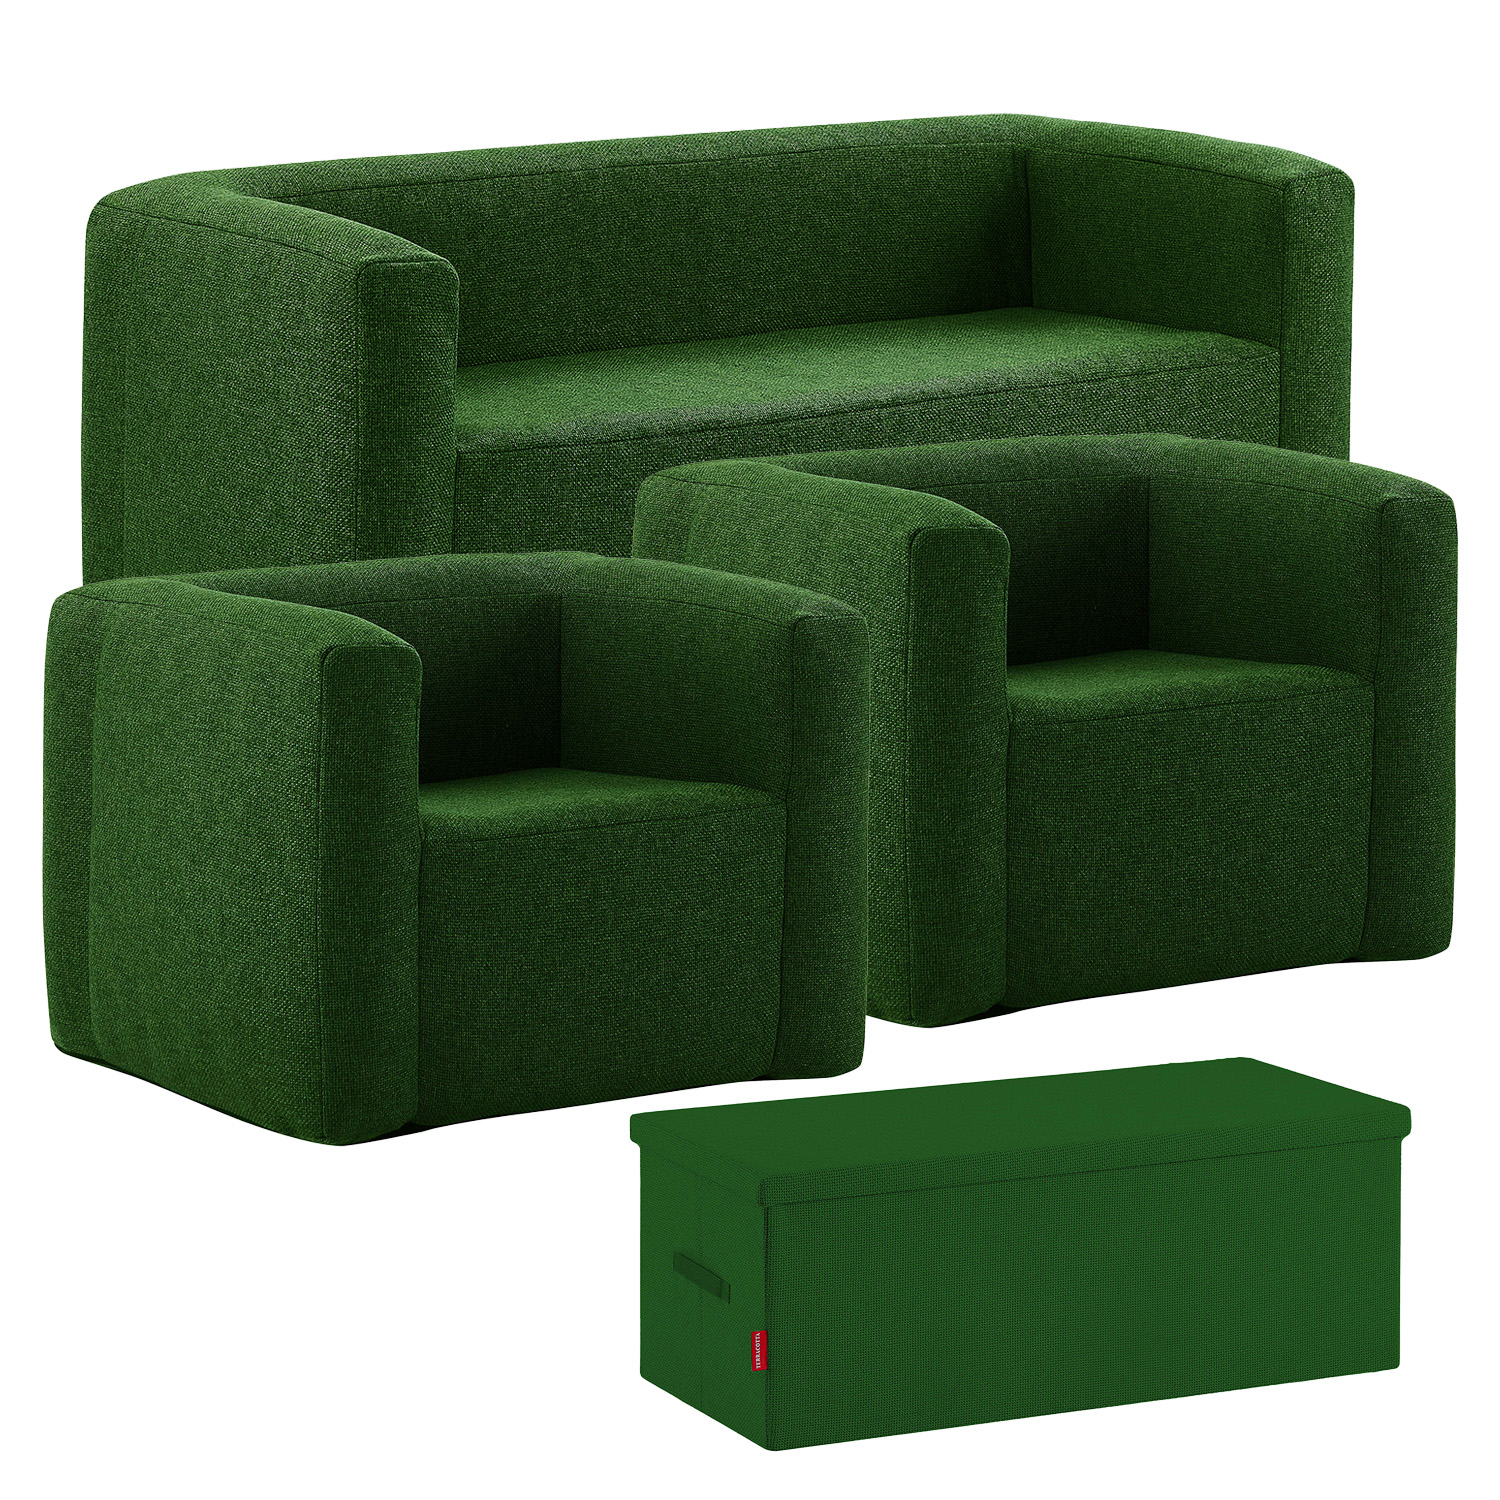 Set de salon gonflable complet terracotta - intérieur et extérieur - couleur vert